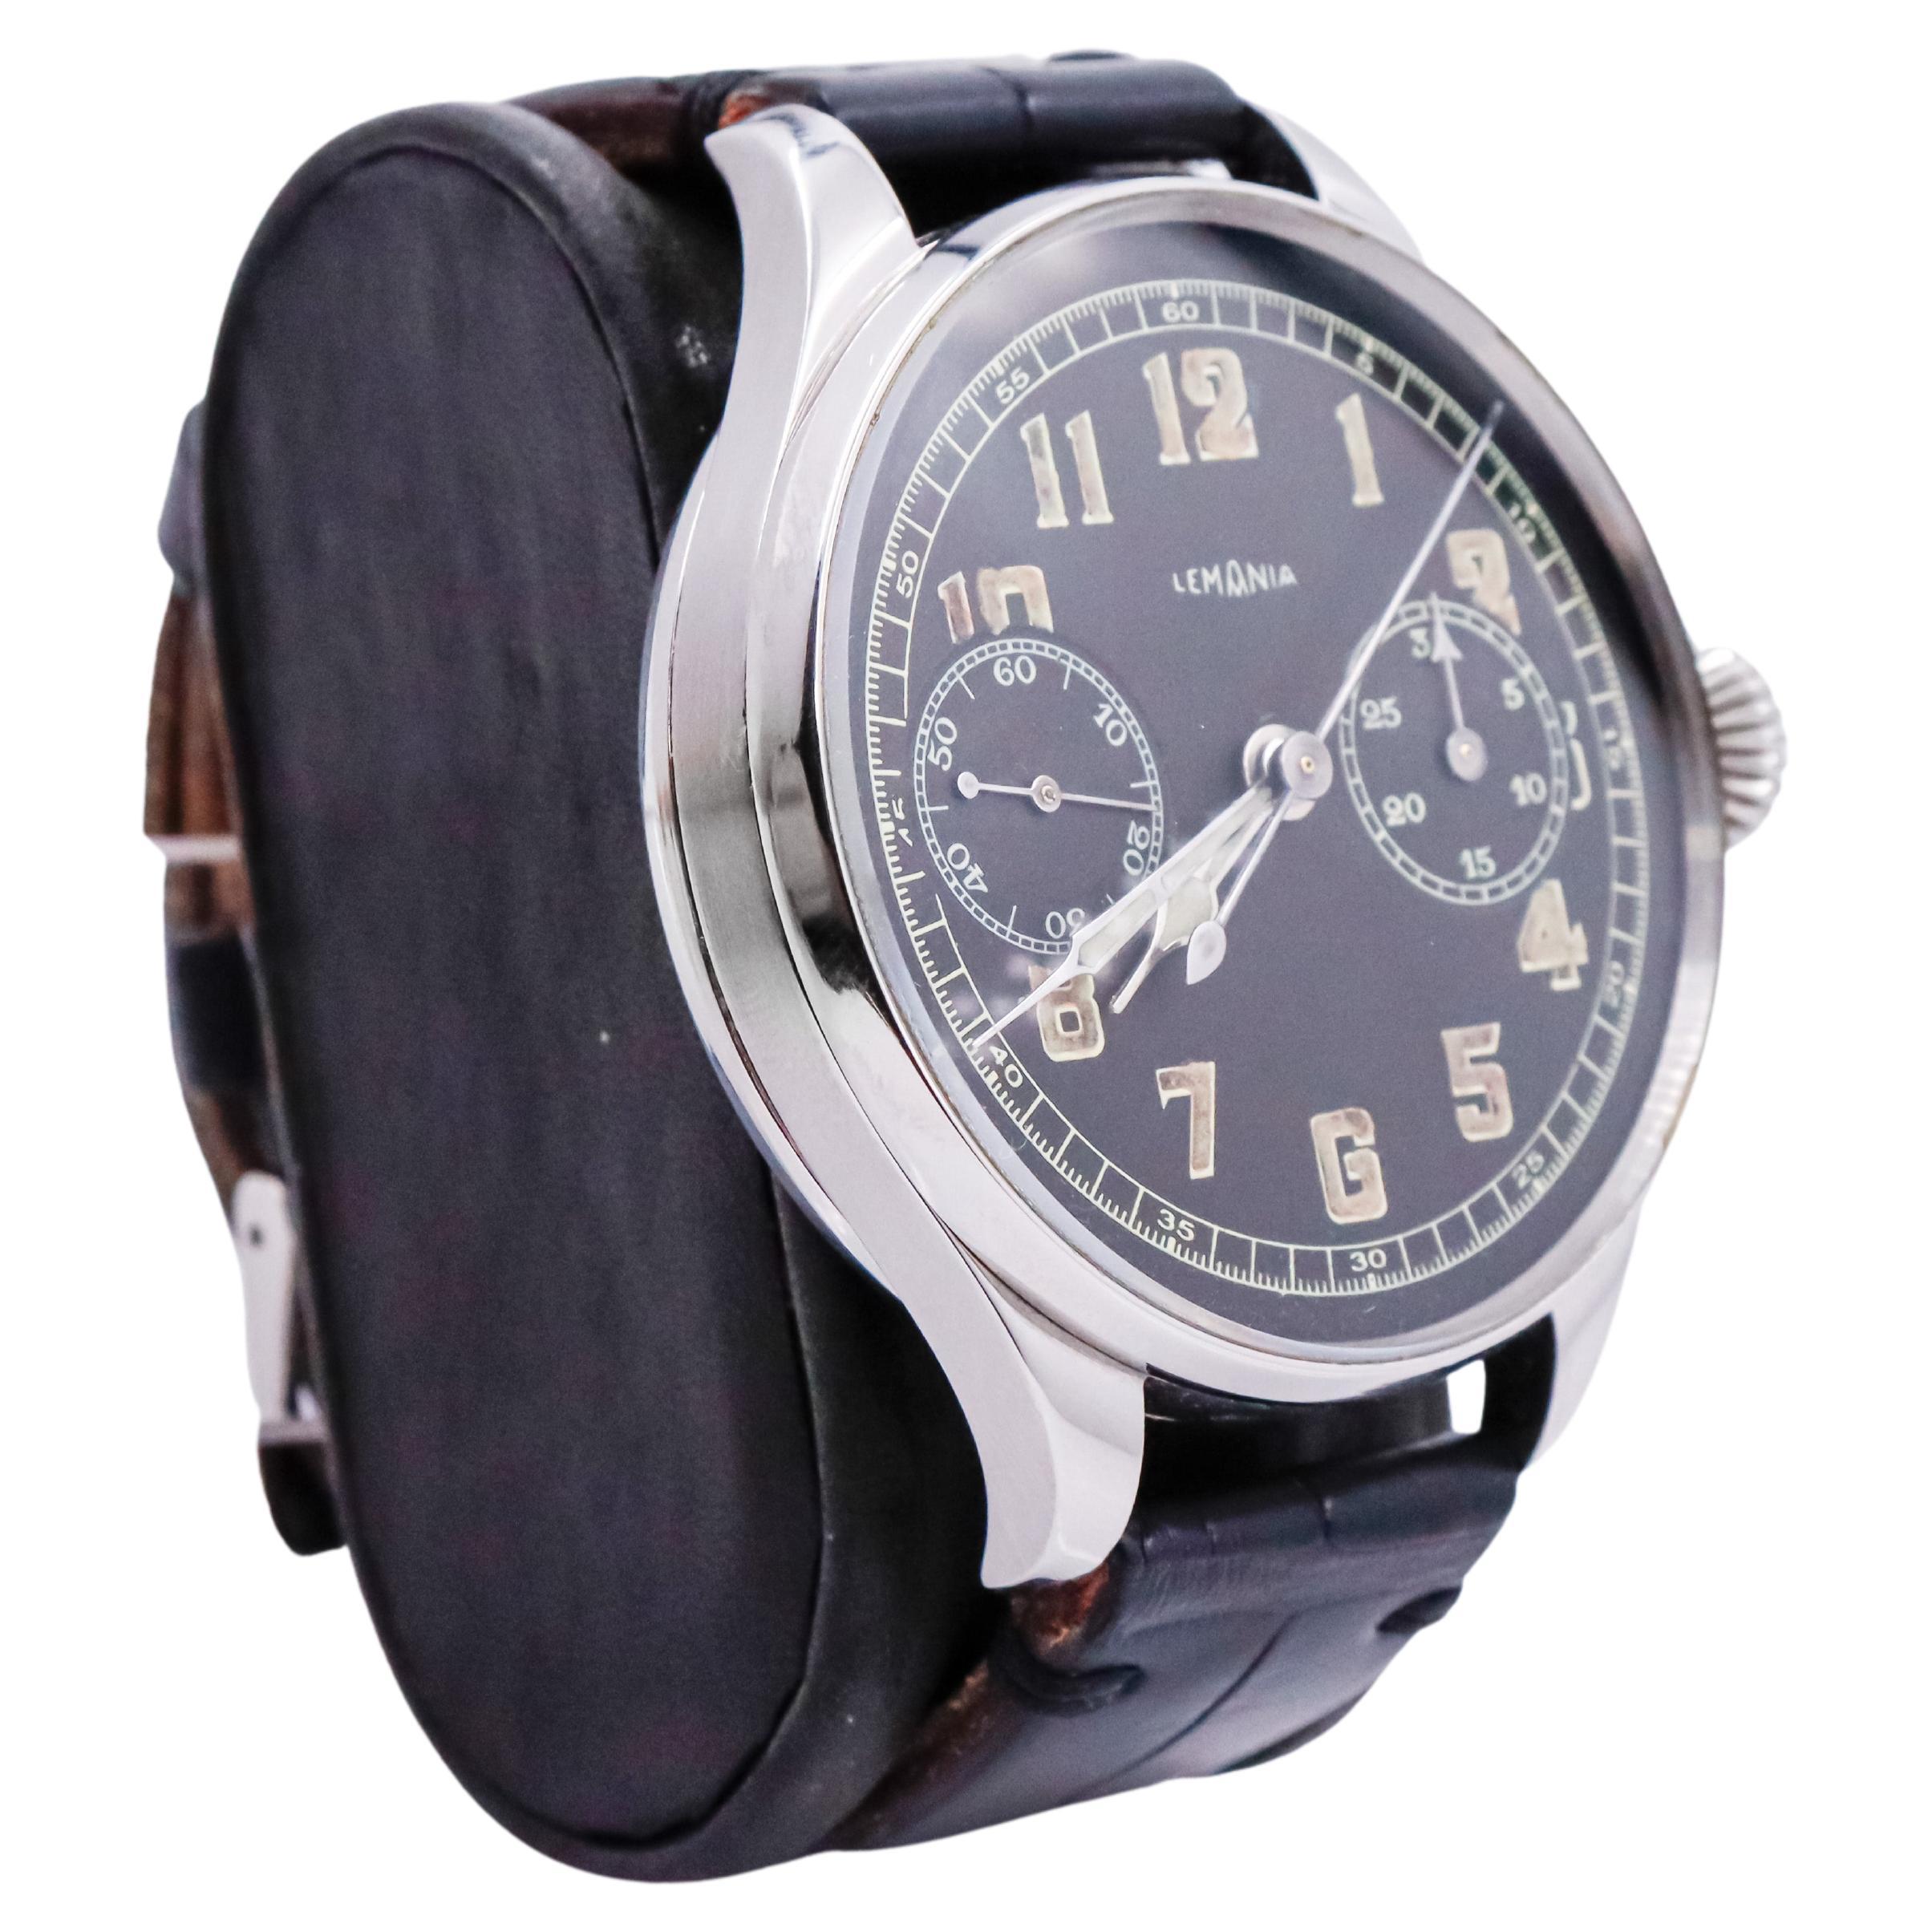 USINE / MAISON : Lemania Watch Company
STYLE / RÉFÉRENCE : Chronographe surdimensionné avec fond d'exposition 
METAL / MATERIAL : Acier inoxydable
CIRCA / ANNEE : Années 1910
DIMENSIONS / TAILLE : Longueur 56mm X Diamètre 46mm 
MOUVEMENT / CALIBRE :